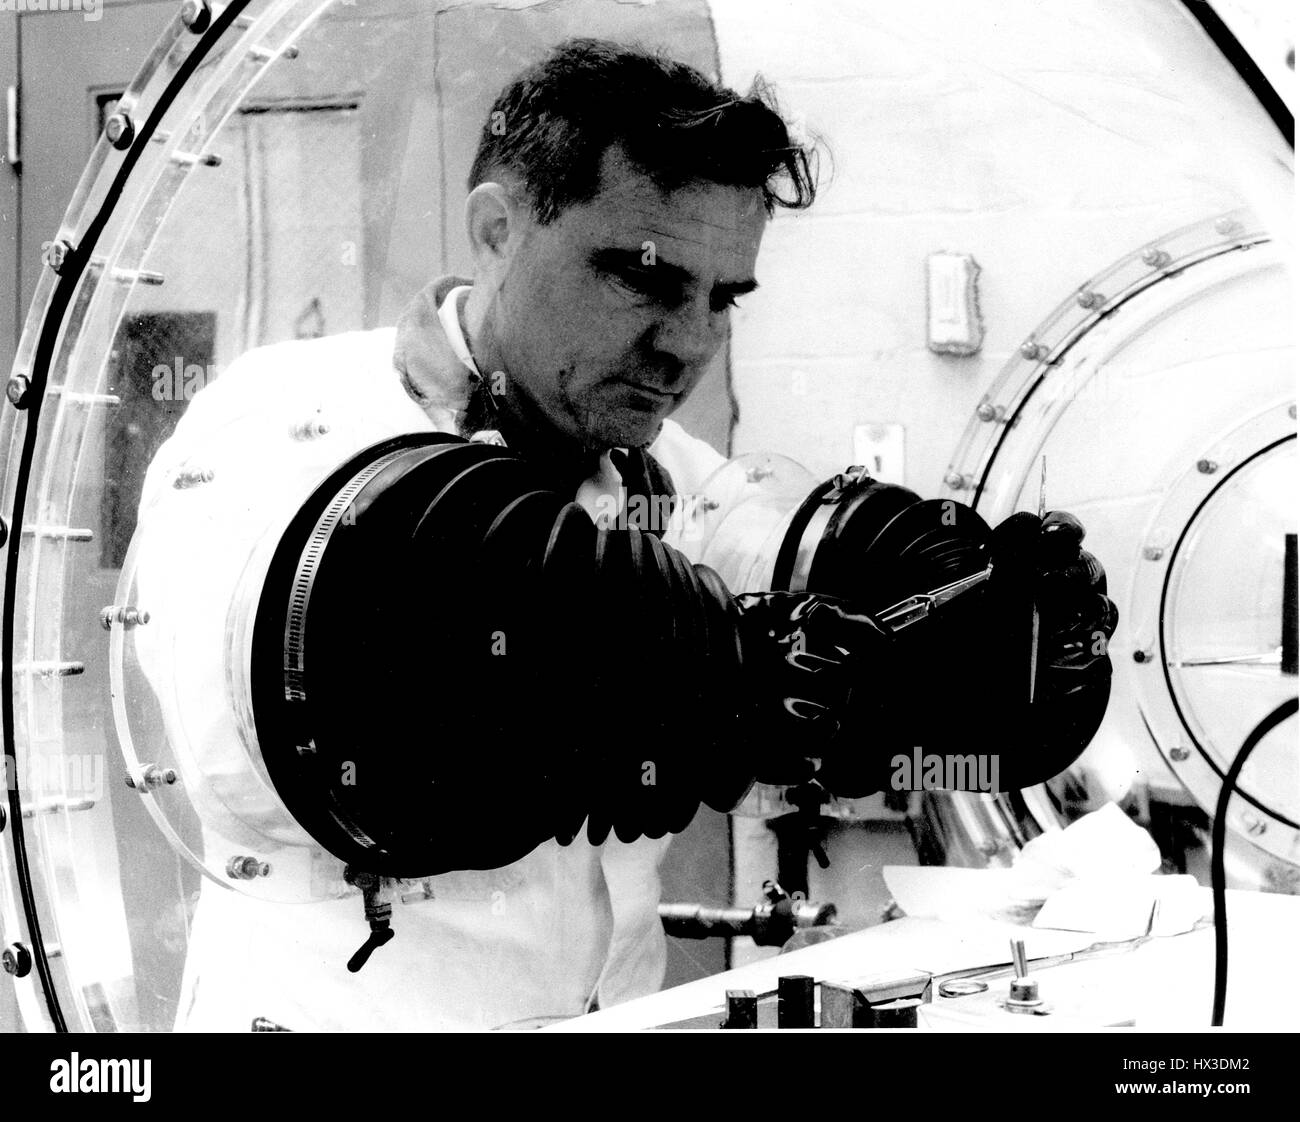 Un uomo è la memorizzazione blandamente materiali radioattivi in modo sicuro in un vano portaoggetti, 1970. Immagine cortesia del Dipartimento Americano di Energia. Foto Stock